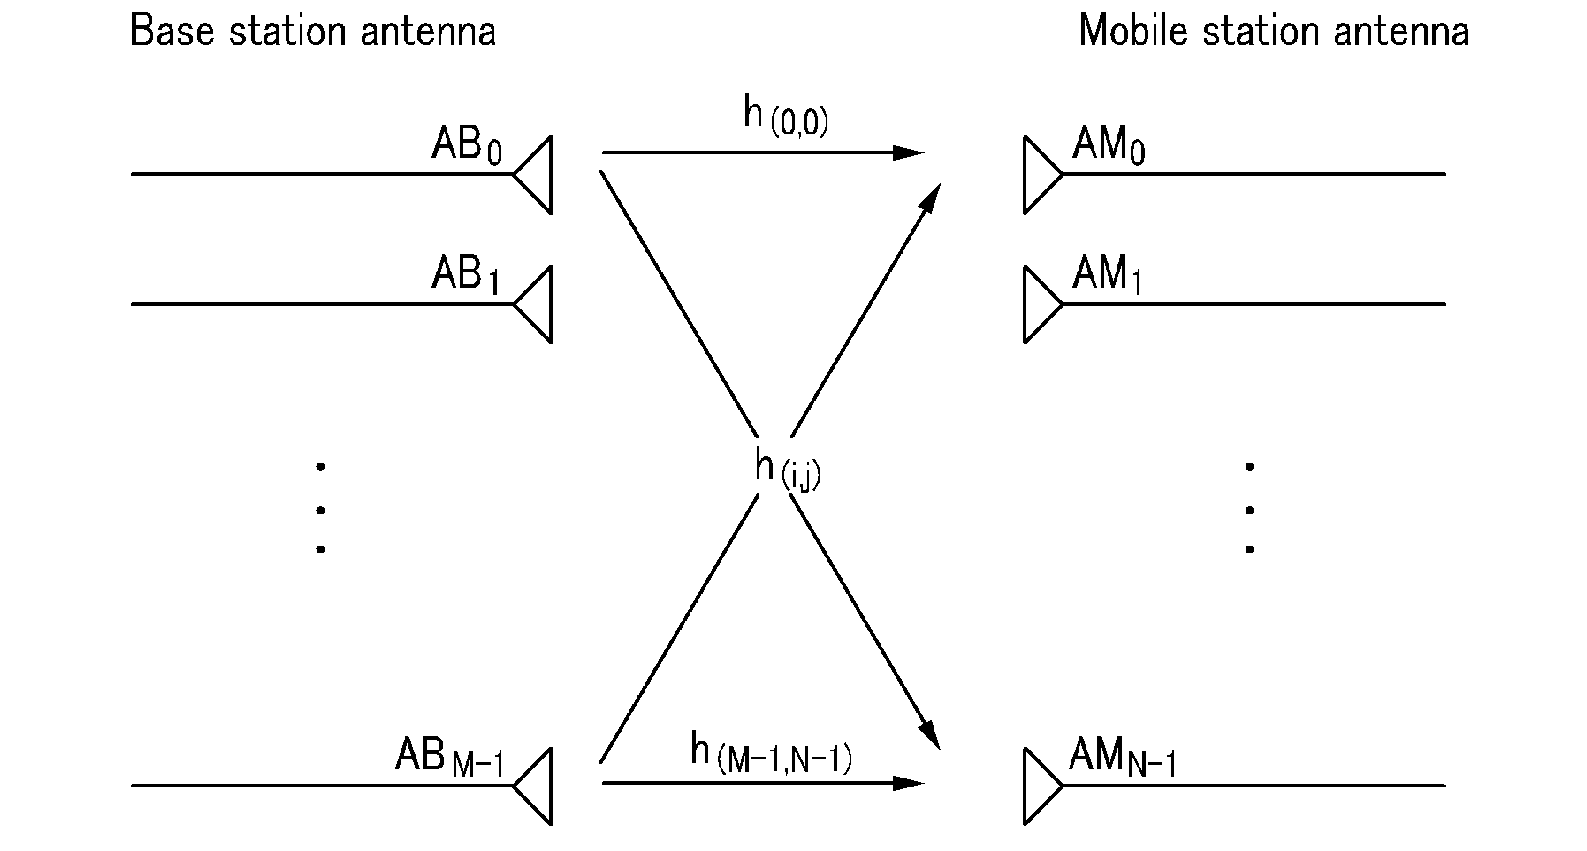 Beamforming method using multiple antennas